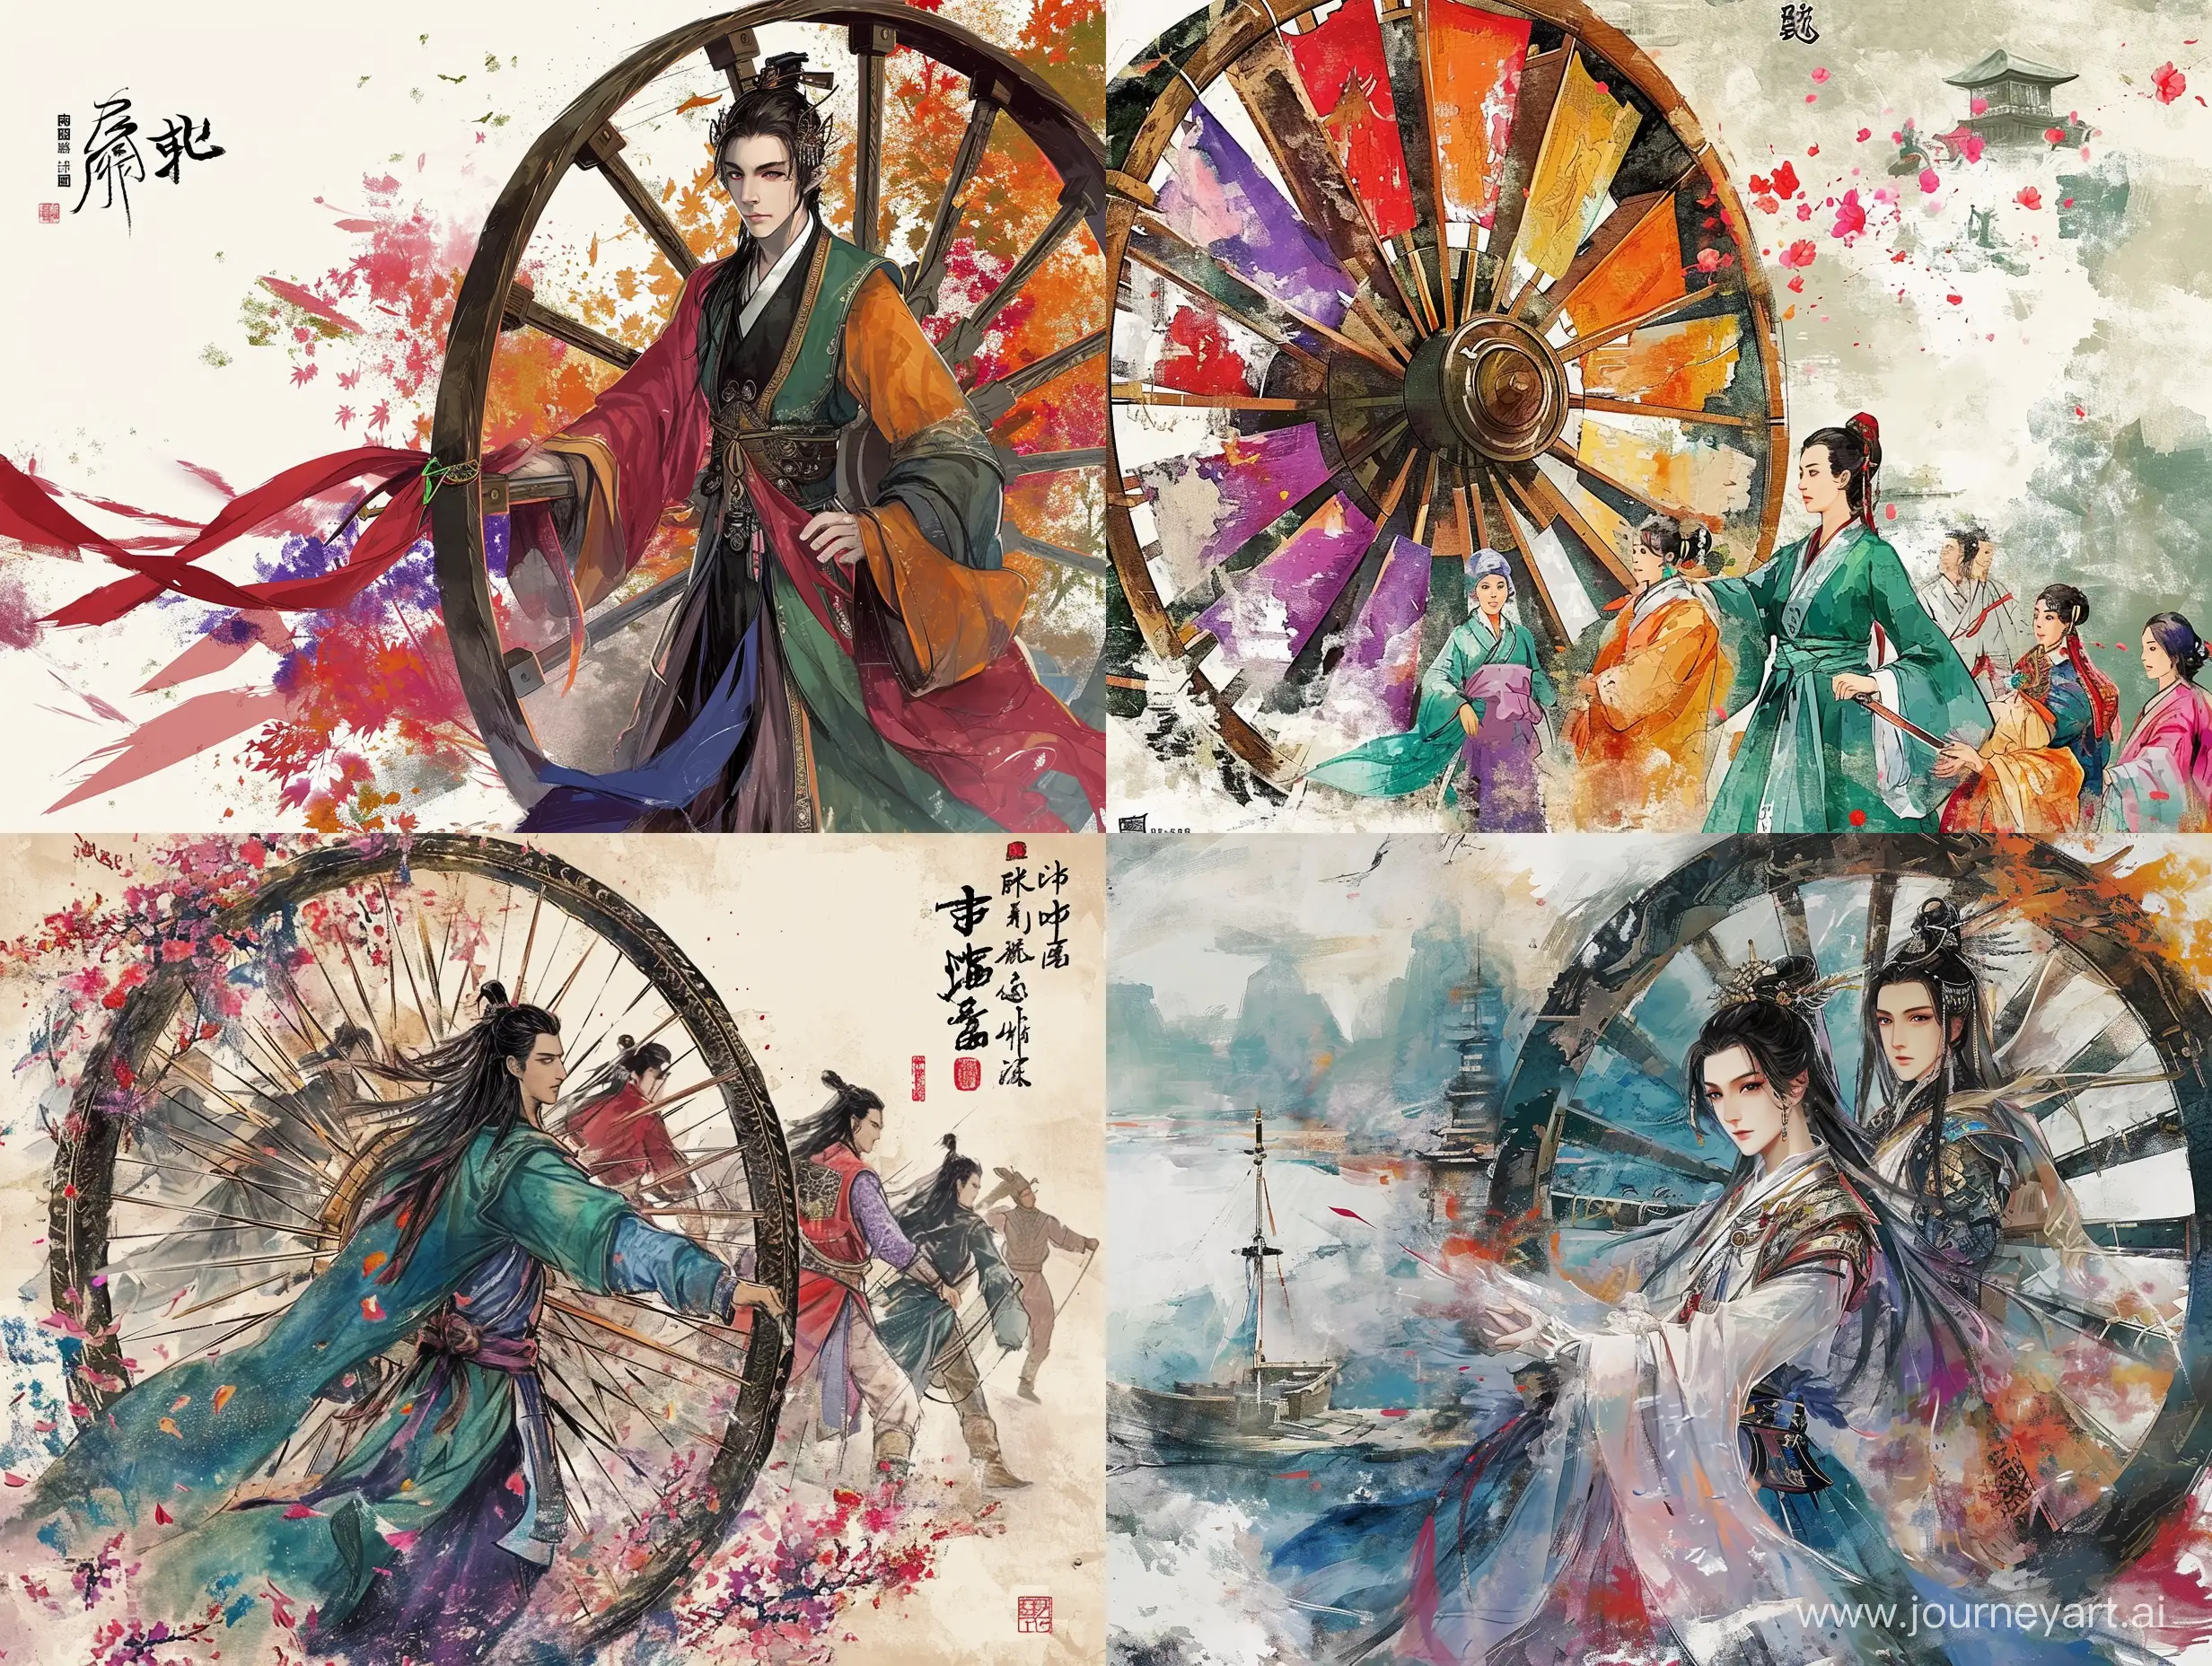 历史的巨轮滚滚向前，彩色中国风，水墨画风格，二次元漫画，高清，高级感，大师之作，古代，东方美学。